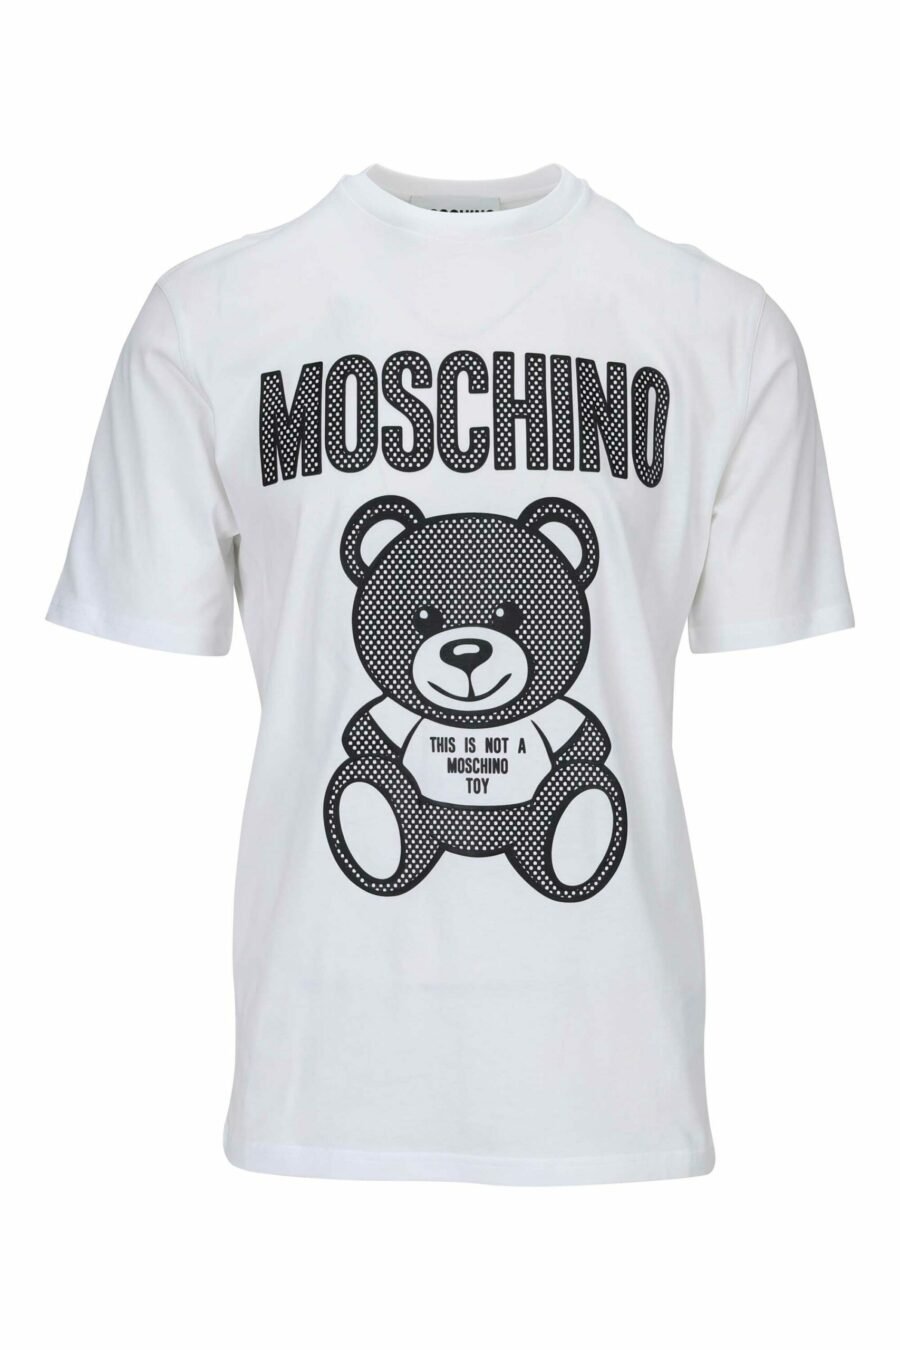 T-shirt blanc avec maxilogo ours monochrome à pois - 667113455617 scaled